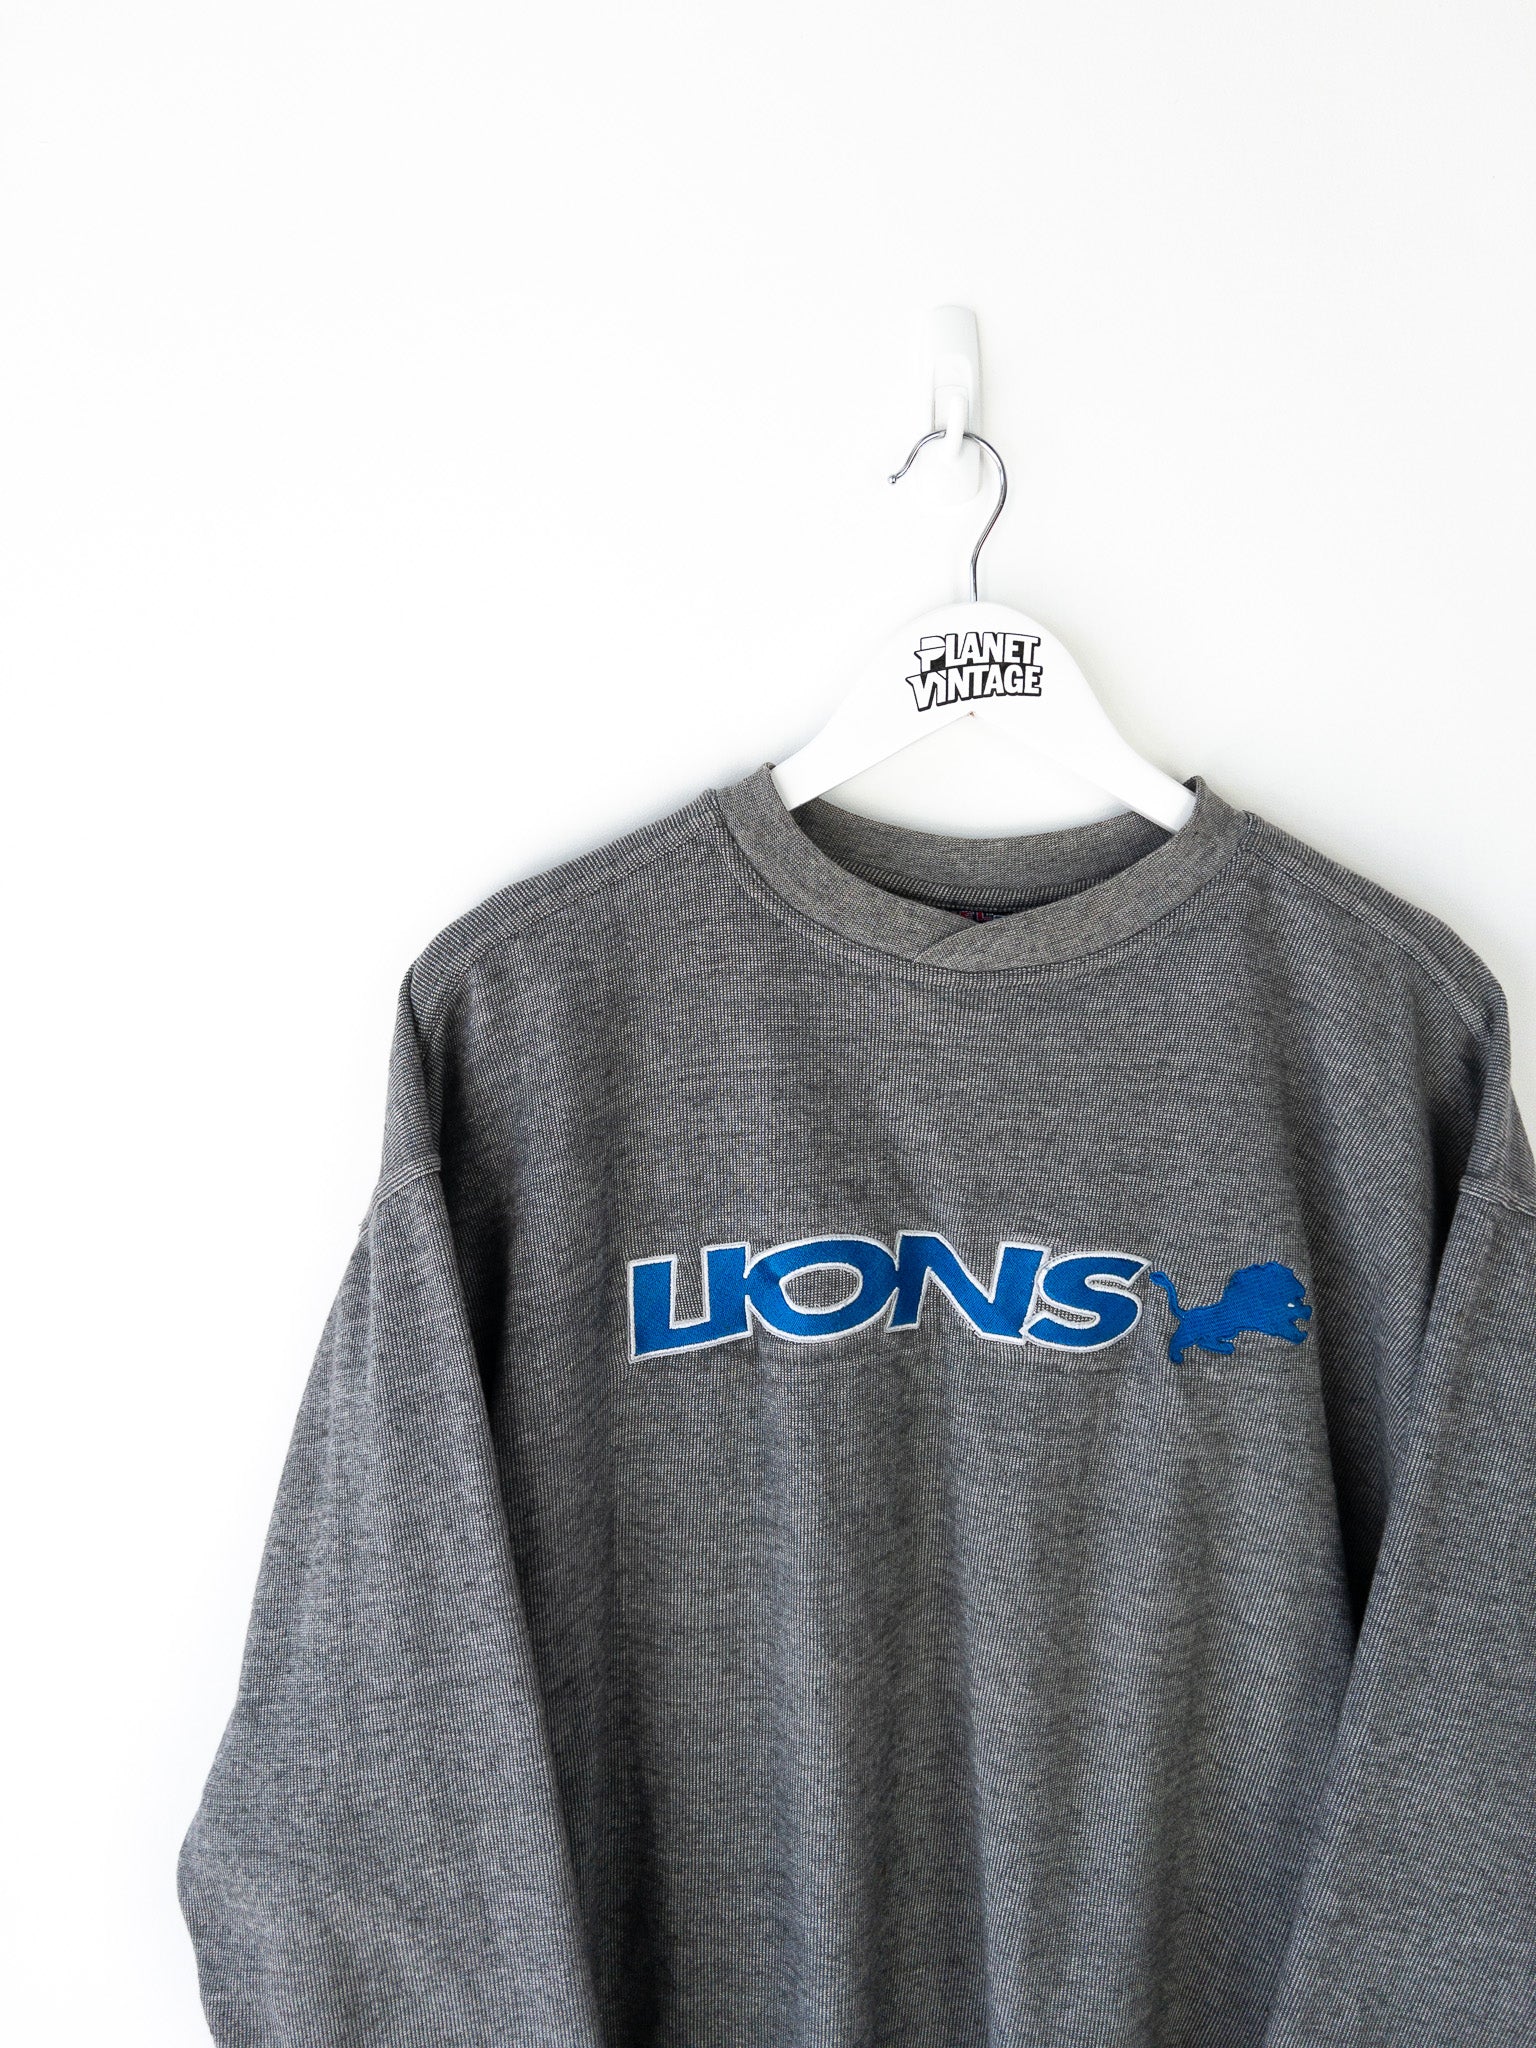 Vintage Detroit Lions Sweatshirt (L)